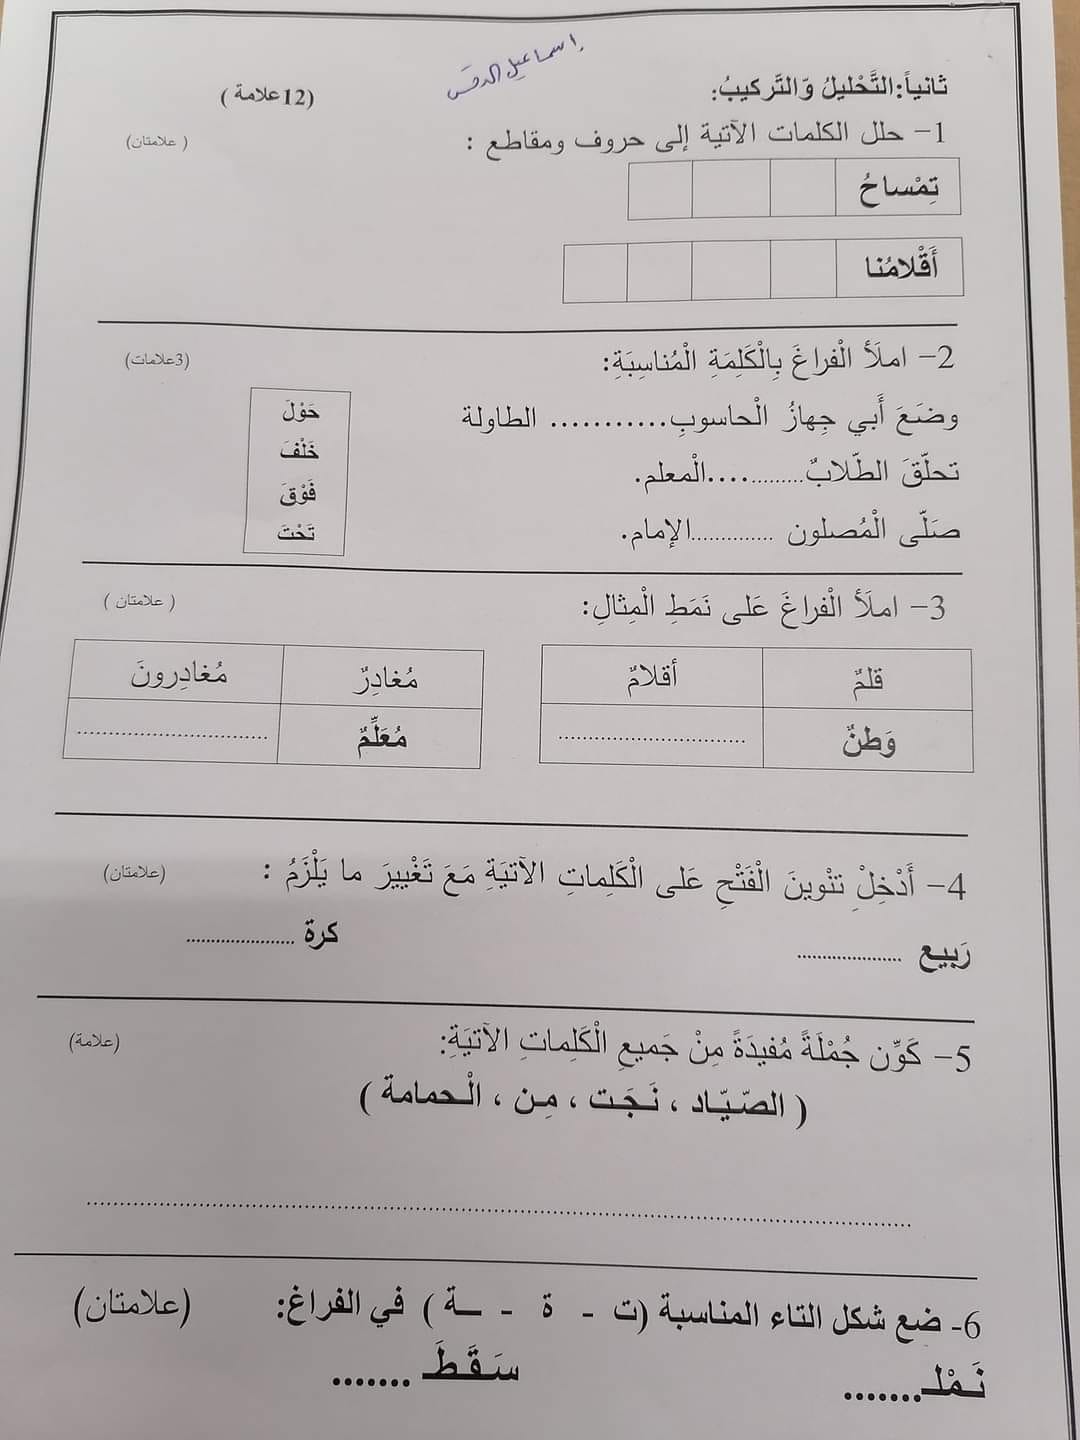 5 صور امتحان نهائي لمادة اللغة العربية للصف الثاني الفصل الاول 2021.jpg